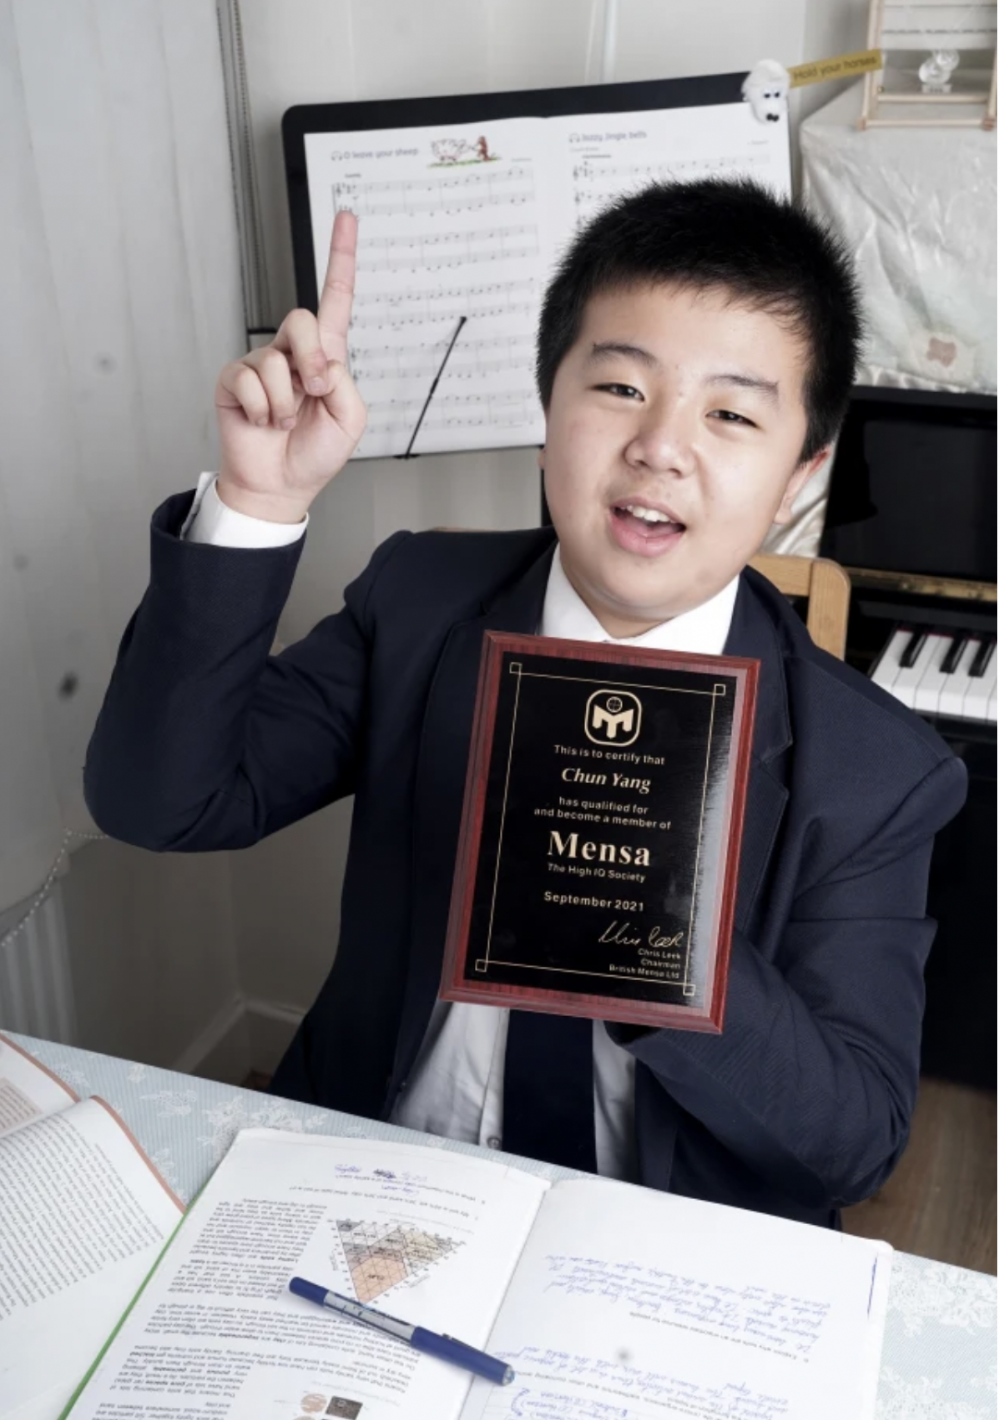 12歲華裔男童Daniel Yang智商達162。